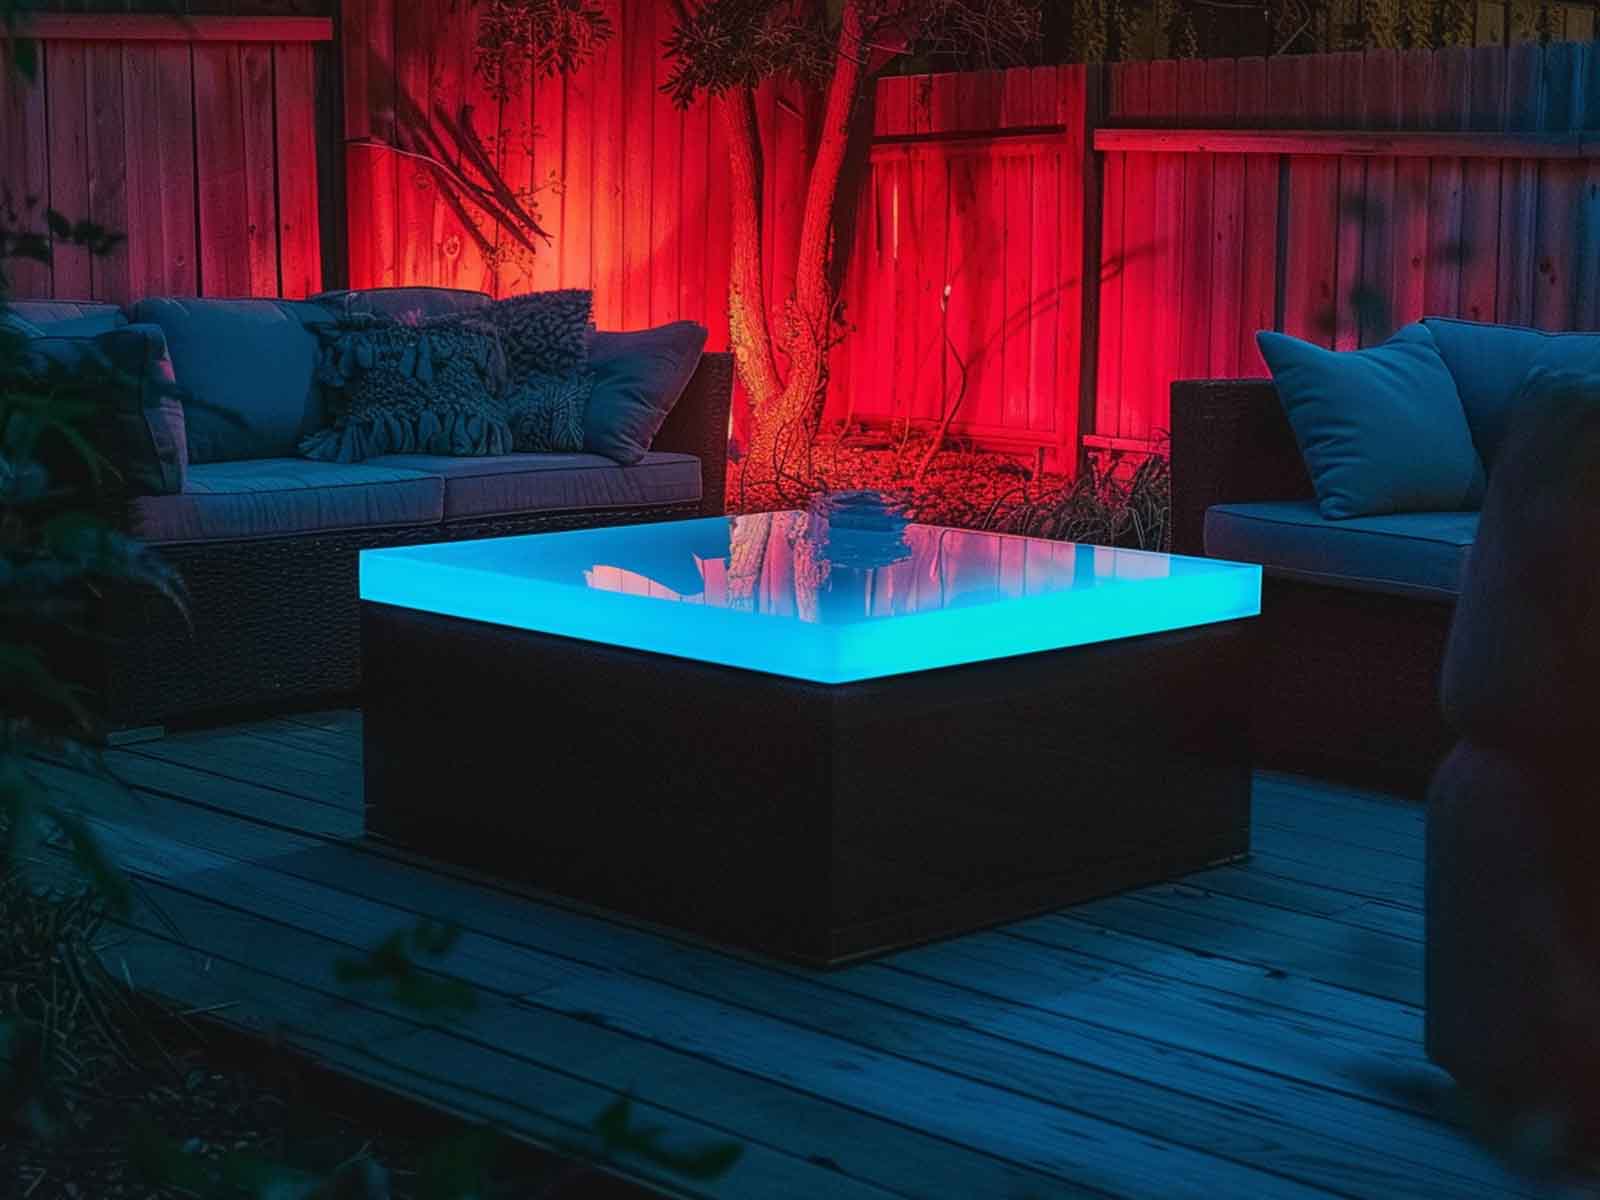 An illuminated table on a garden deck